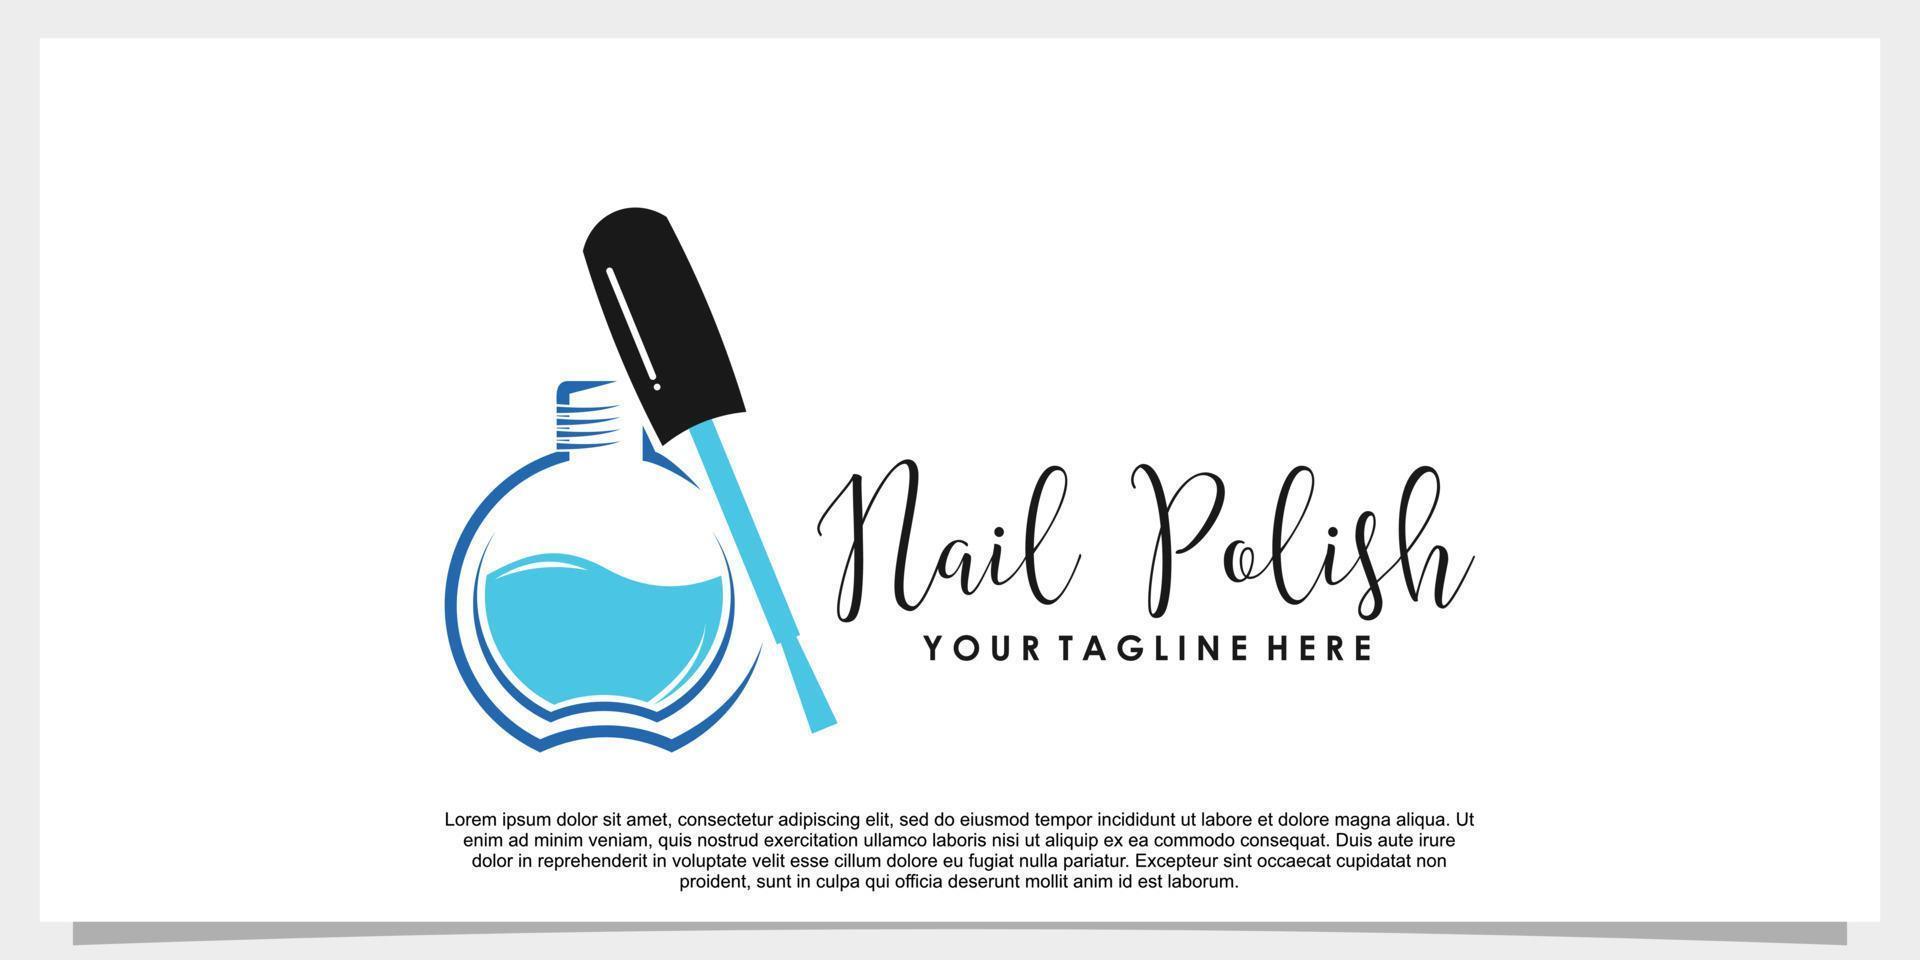 nail polish vector logo design template